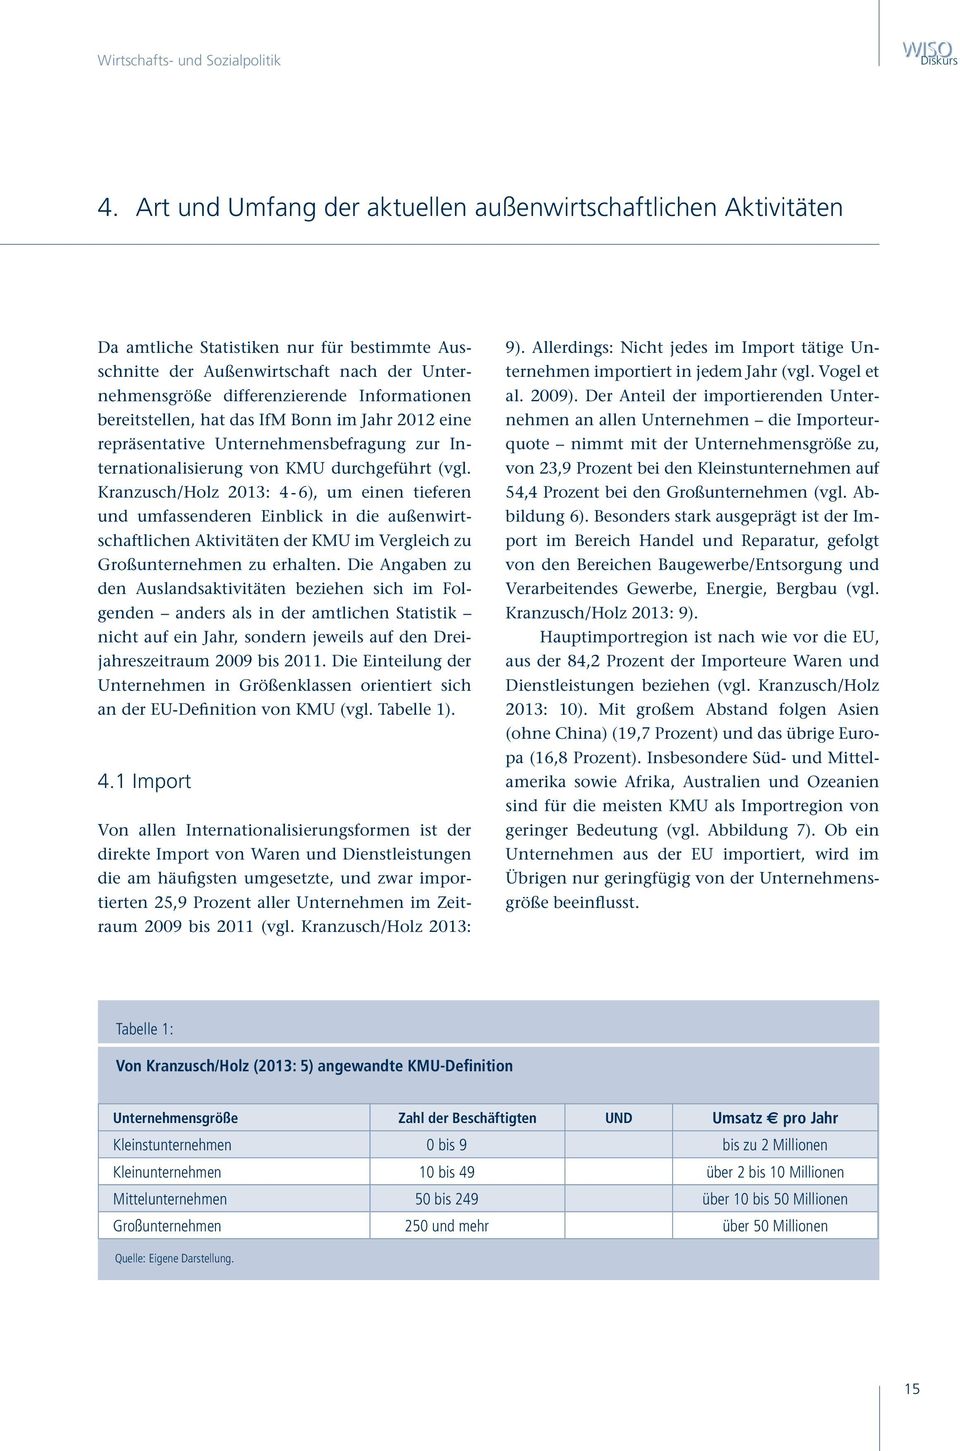 bereitstellen, hat das IfM Bonn im Jahr 2012 eine repräsentative Unternehmensbefragung zur Internationalisierung von KMU durchgeführt (vgl.